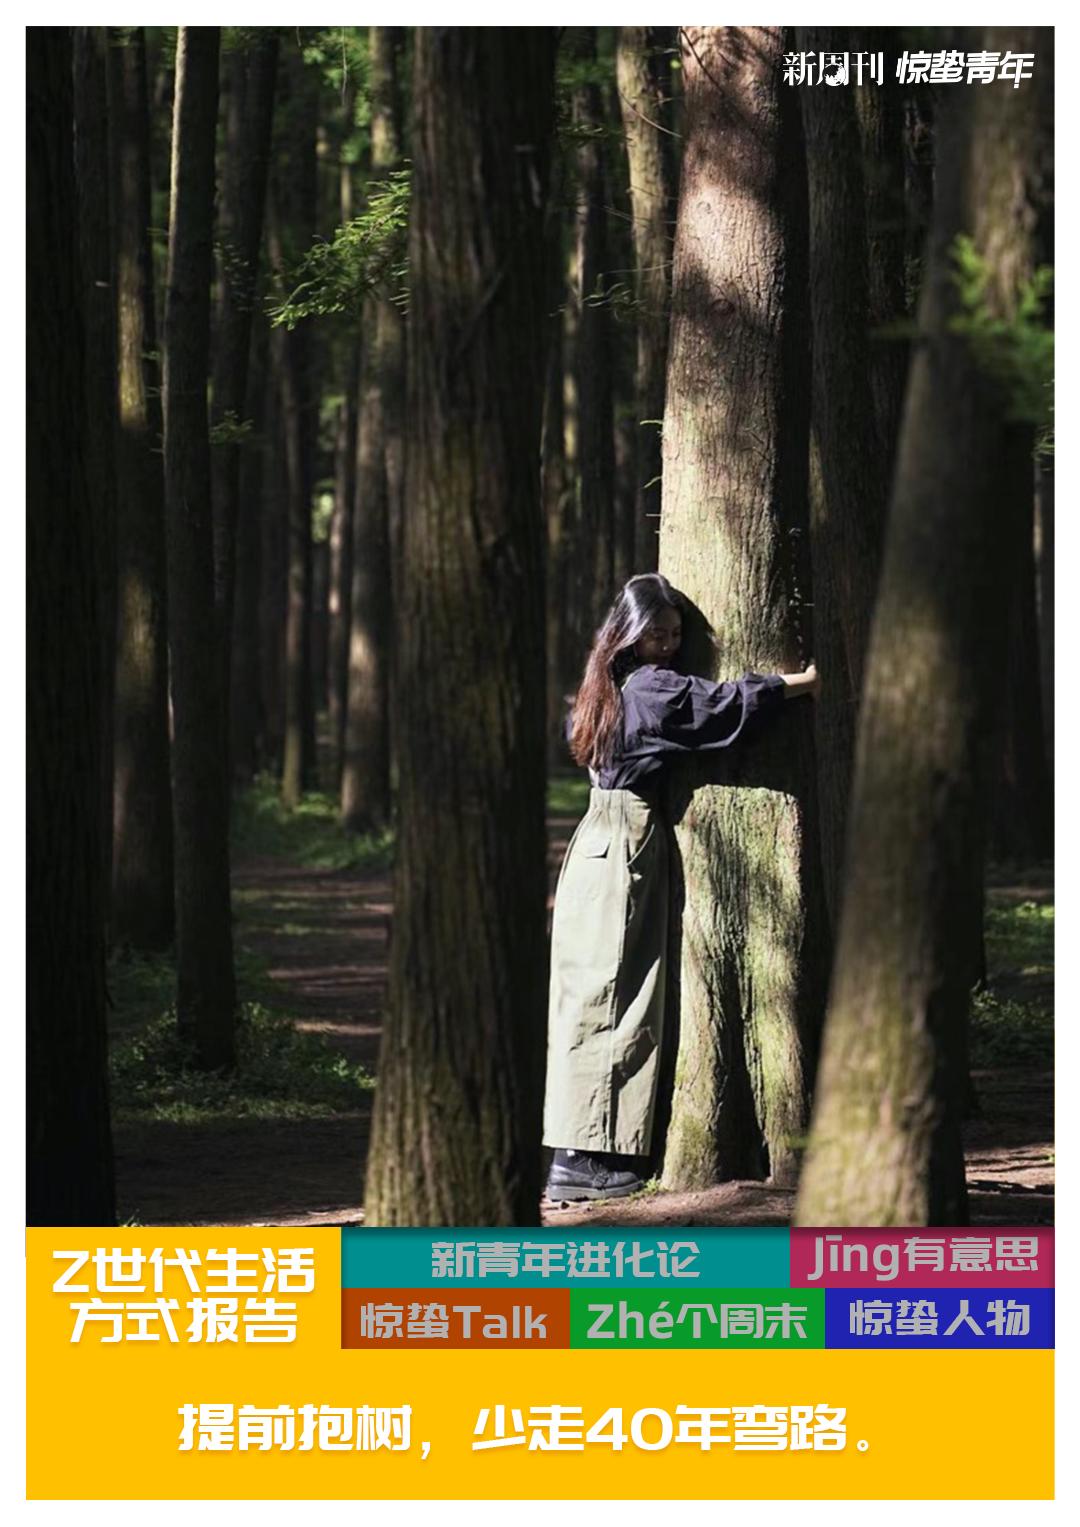 拥抱结构树妇女 库存图片. 图片 包括有 树干, 遮暗, 腋窝, 白种人, 活动家, 握紧, 森林, 拥抱 - 5096303